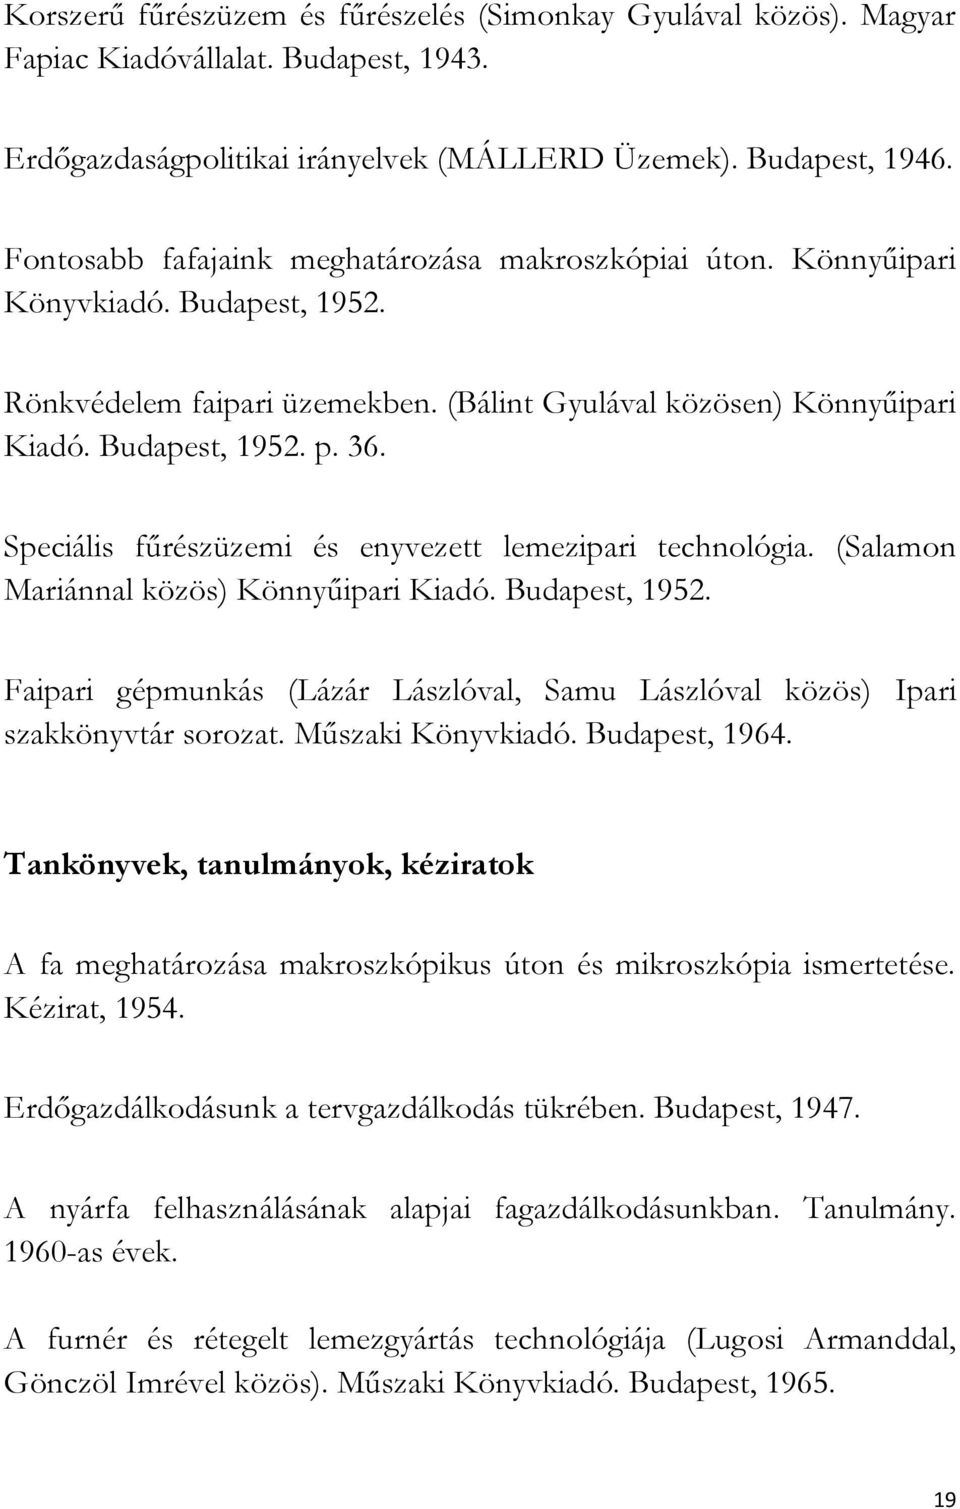 Speciális fűrészüzemi és enyvezett lemezipari technológia. (Salamon Mariánnal közös) Könnyűipari Kiadó. Budapest, 1952.